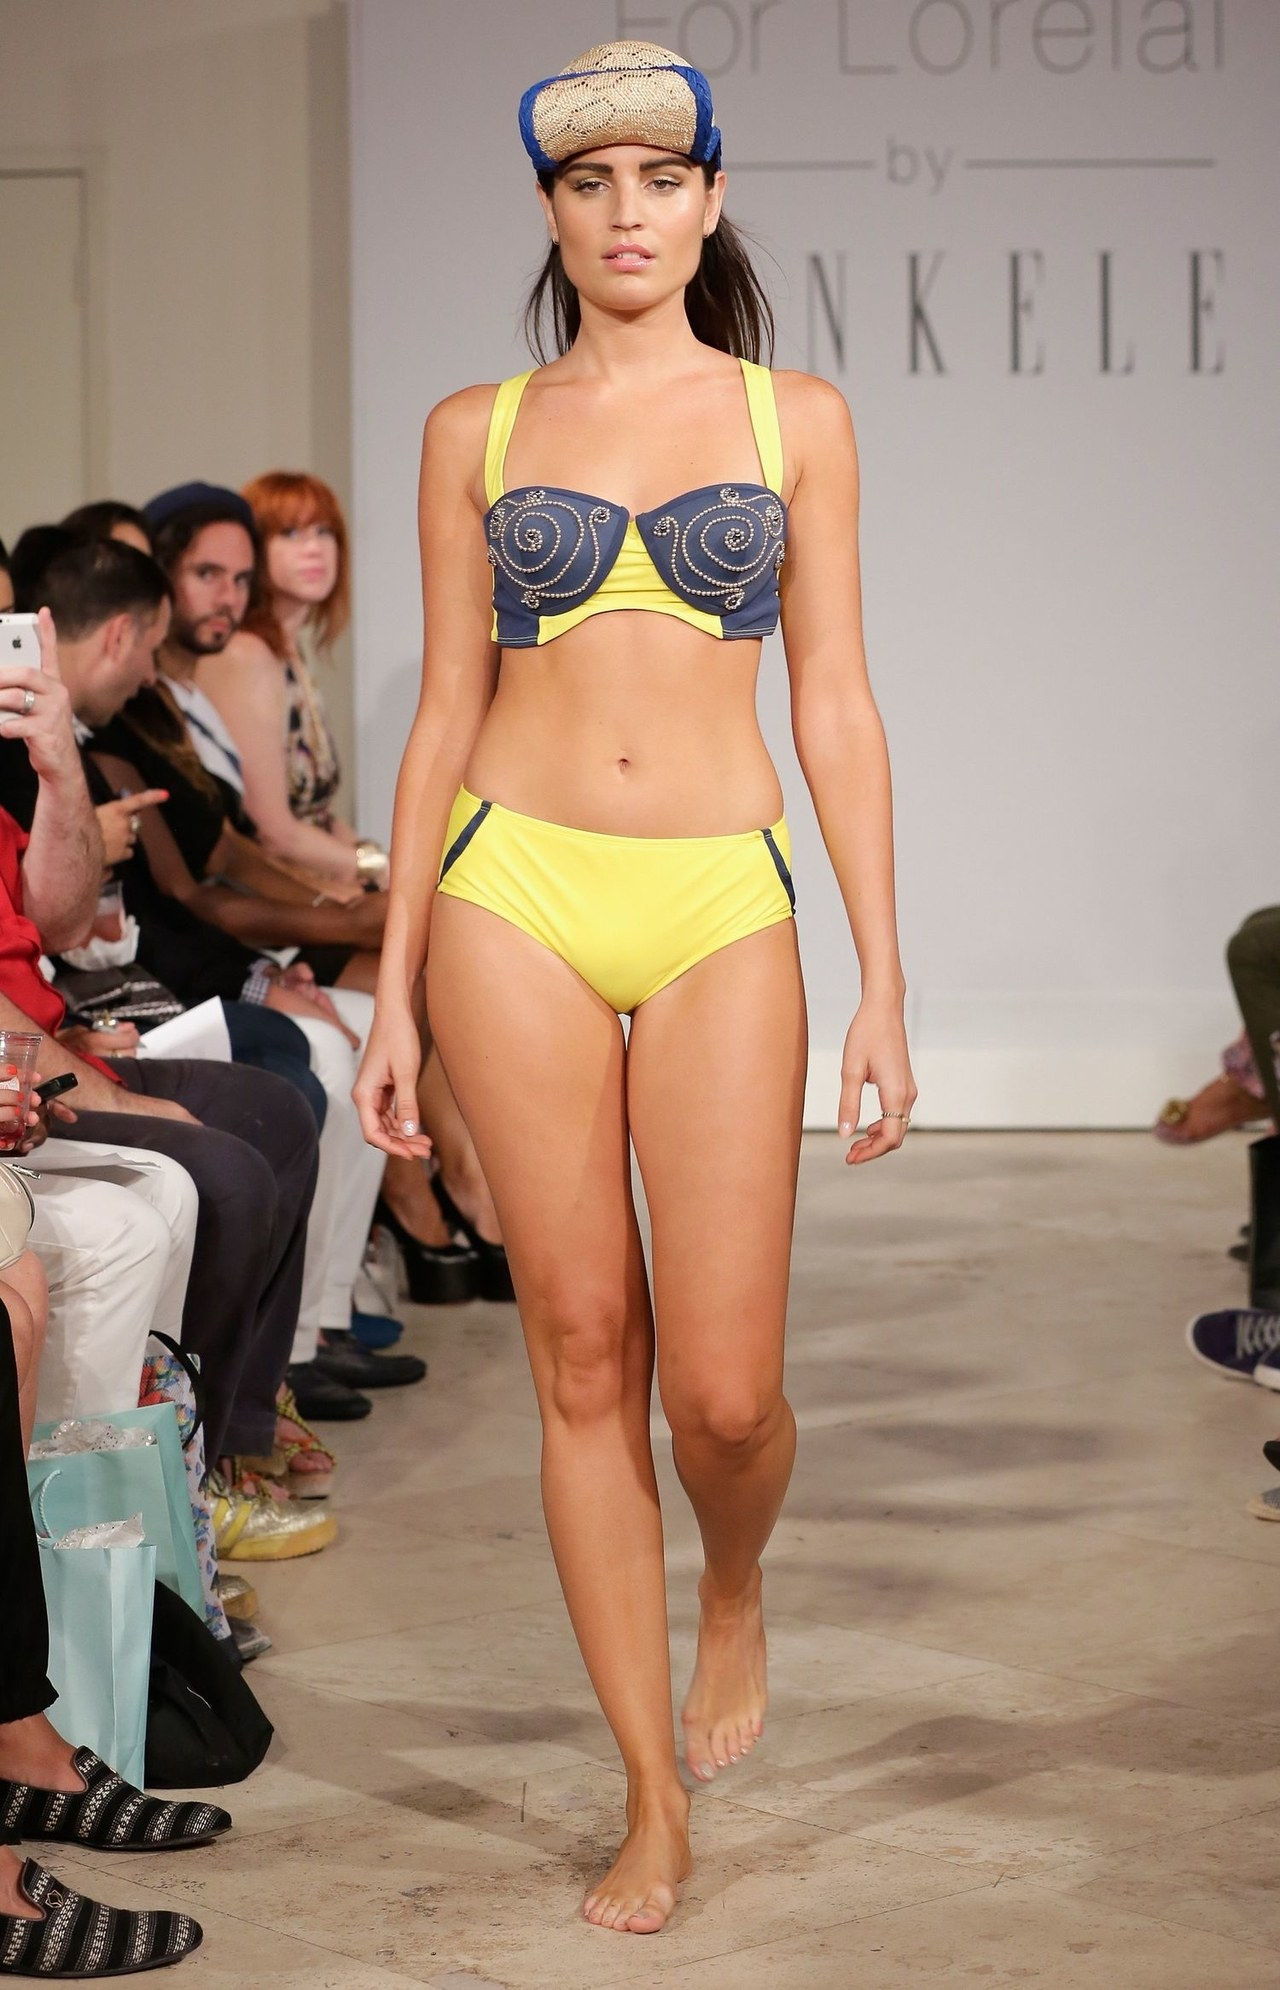 zum loelai by jankele miami swim fashion week curvy model